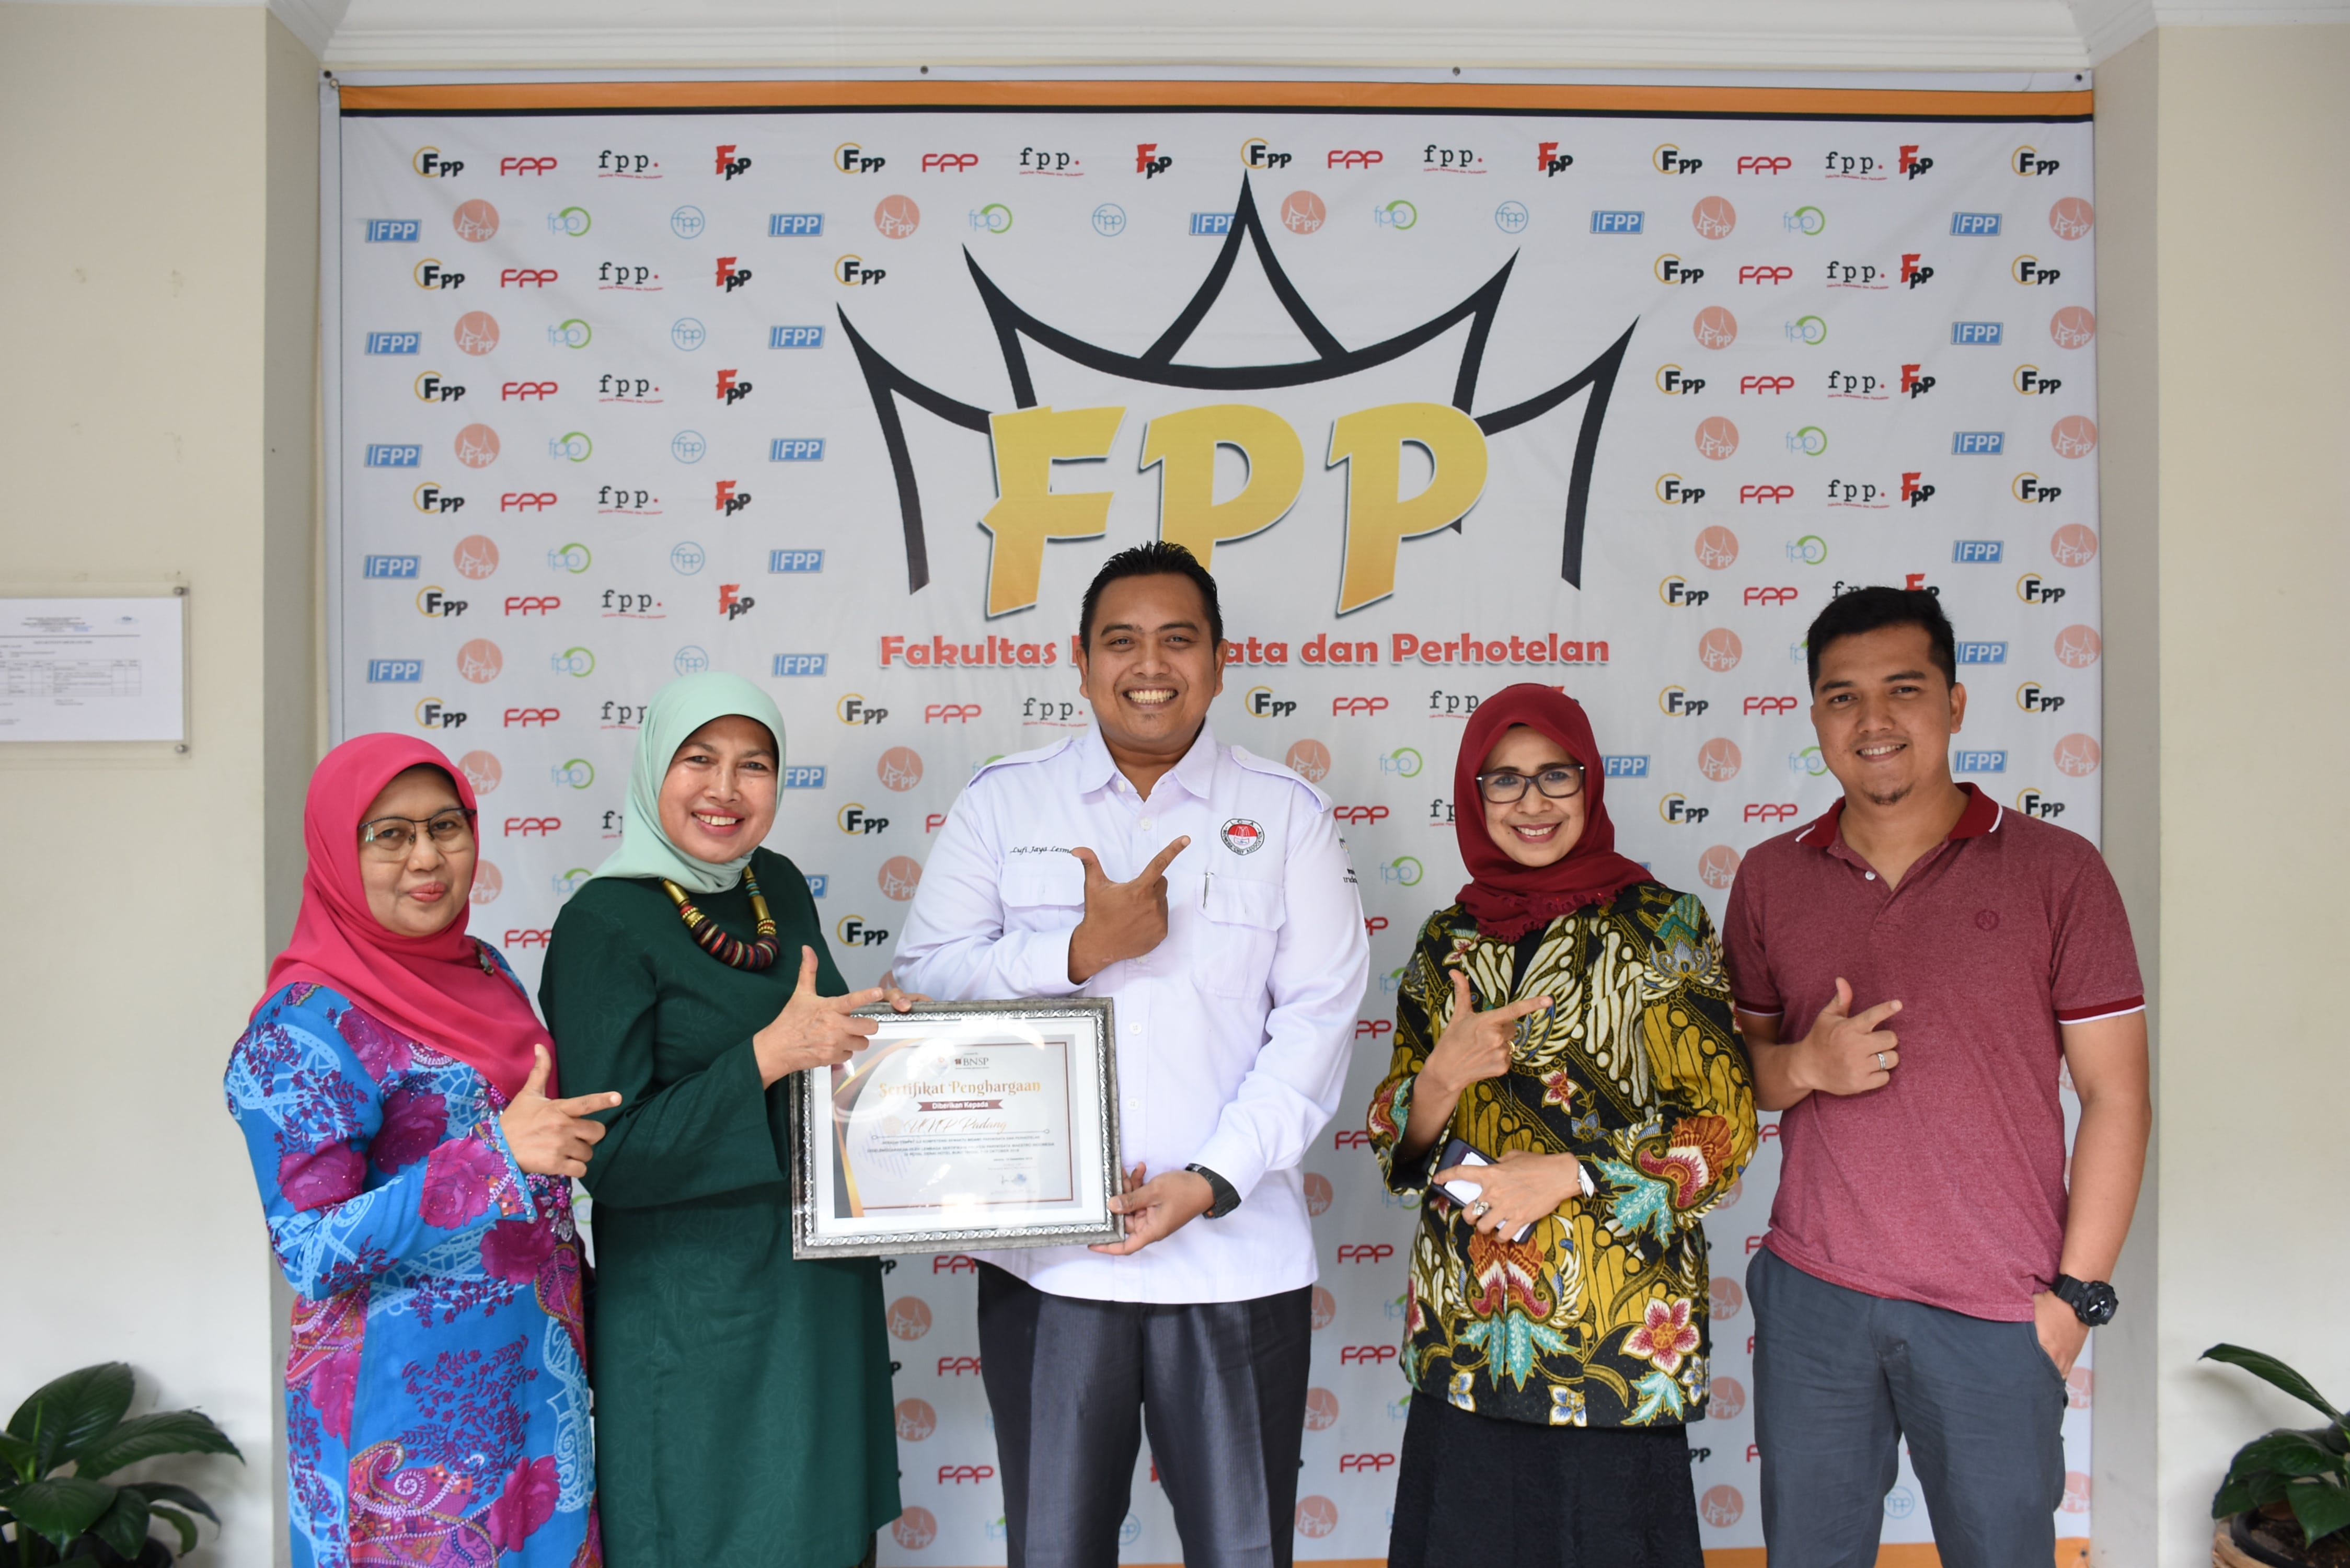 You are currently viewing Ketua LSP Pariwisata Maestro Indonesia menyarahkan sertifikat penghargaan dari BNSP kepada FPP sebagai TUK bidang pariwisata dan perhotelan